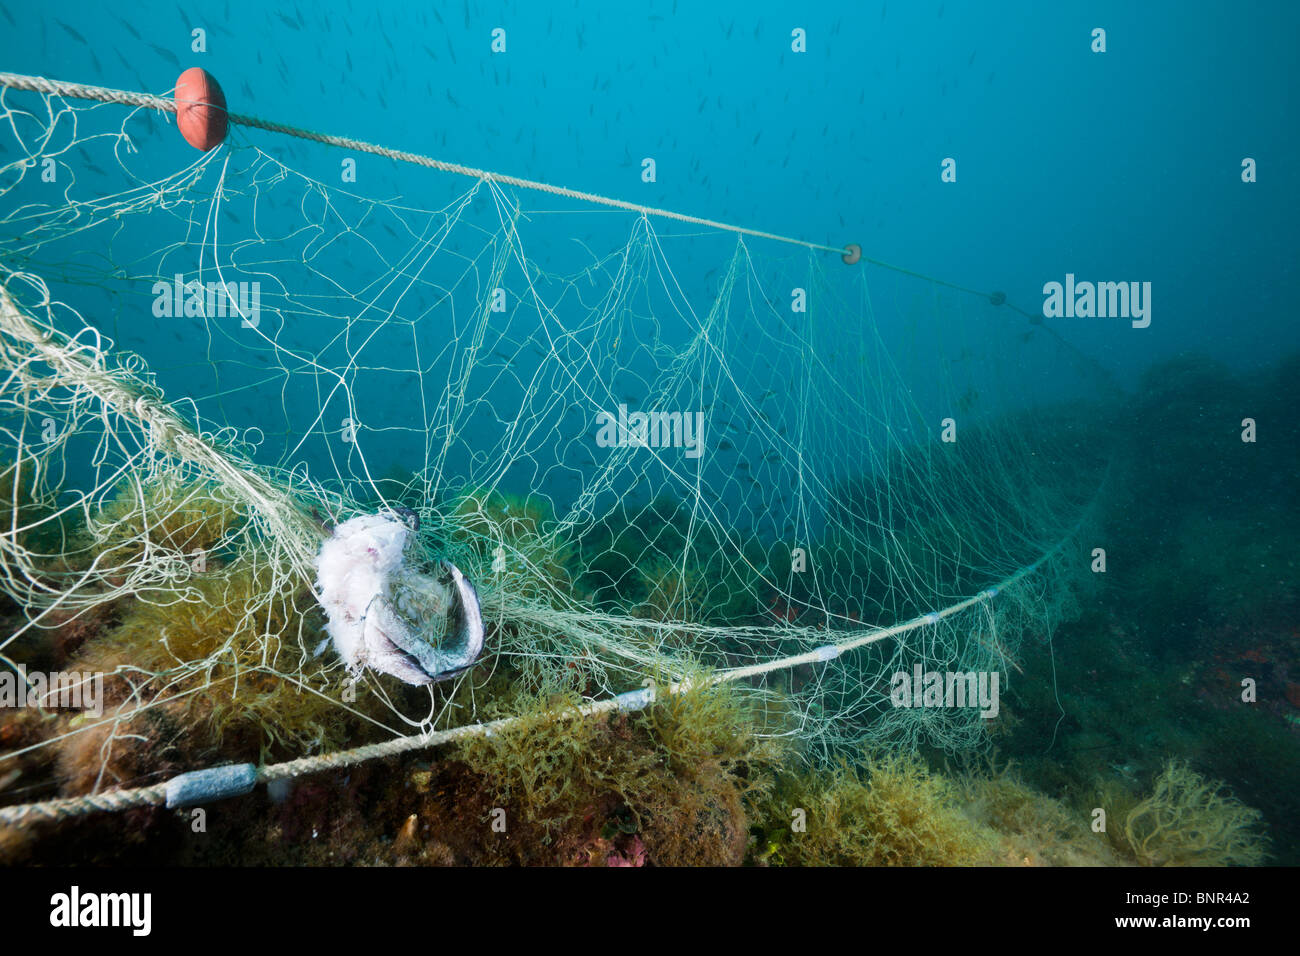 Perso rete da pesca sulla barriera corallina, Cap de Creus, Costa Brava, Spagna Foto Stock